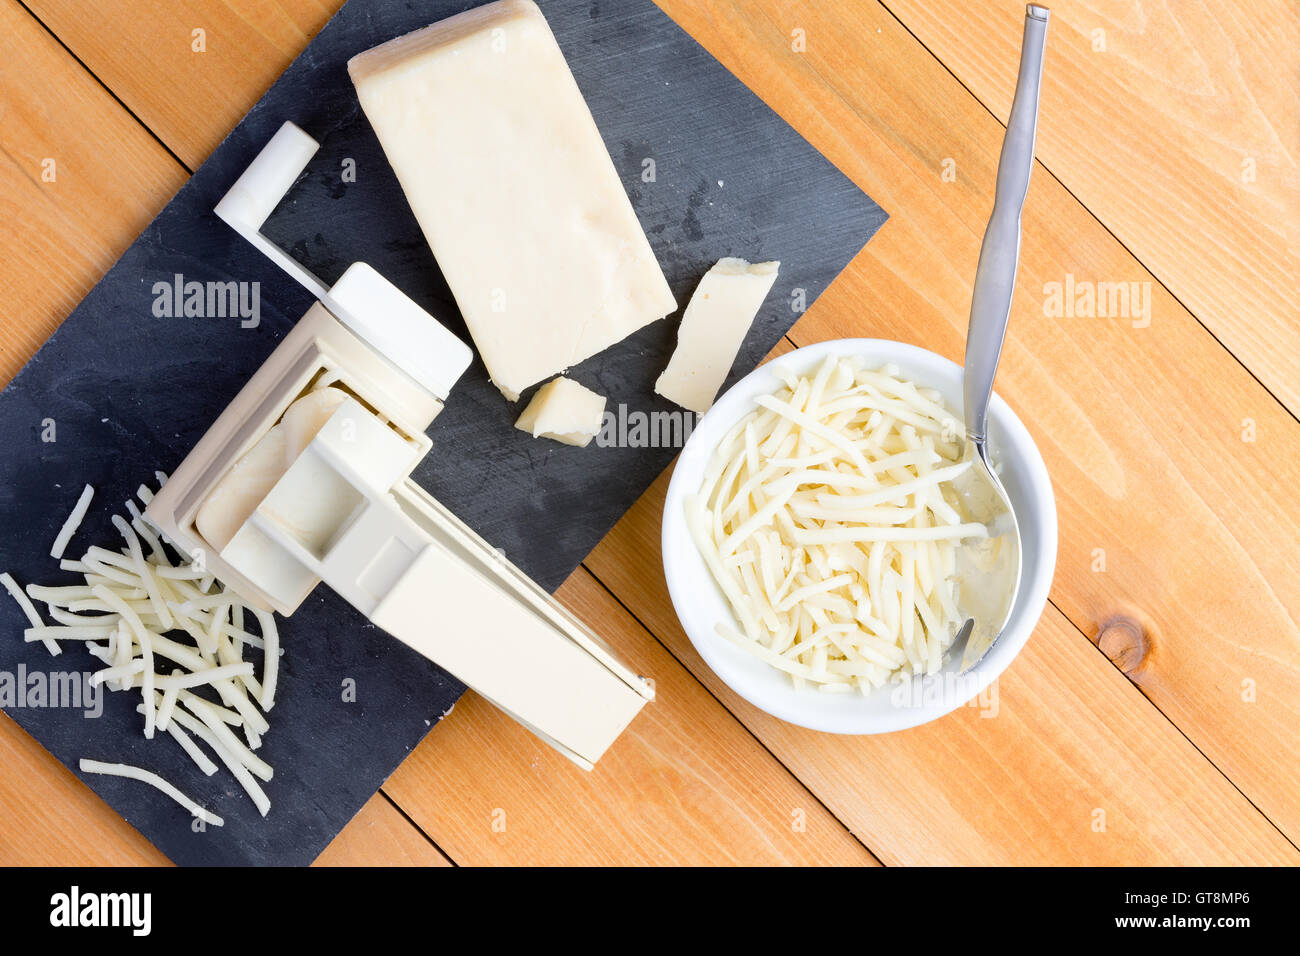 La préparation de gruyère râpé pour la cuisson avec une vue de dessus d'une râpe rotative et wedge de fromage sur un conseil aux côtés de gr Banque D'Images